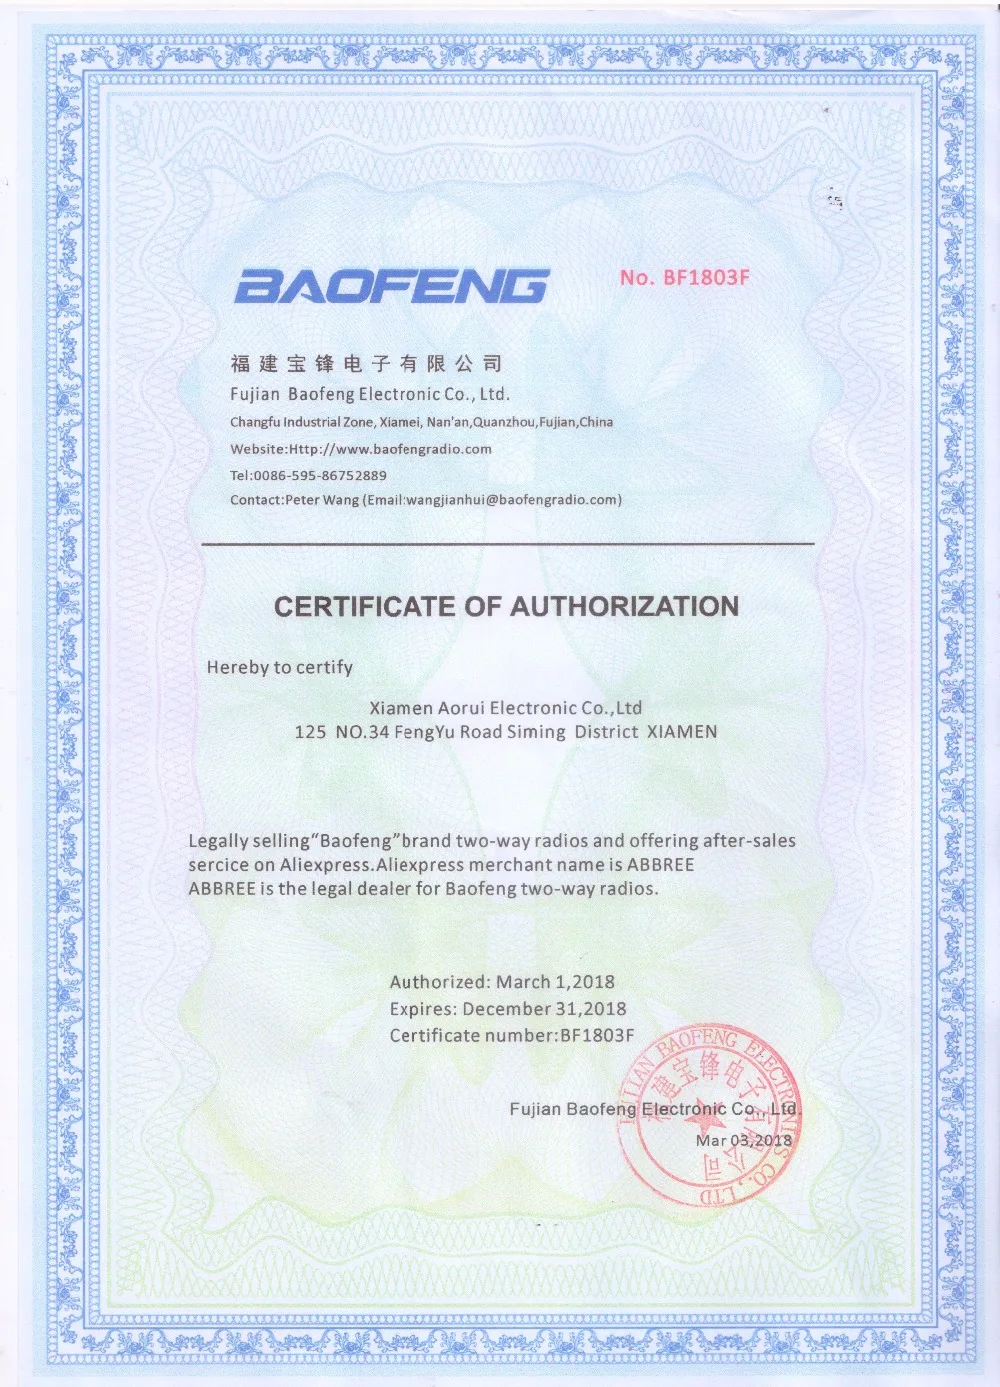 2 шт. Baofeng UV-5R 8 Вт Высокая мощность 10 км диапазон uhf/vhf рация 3800 мАч батарея обновление 8 Вт UV5R КВ трансивер